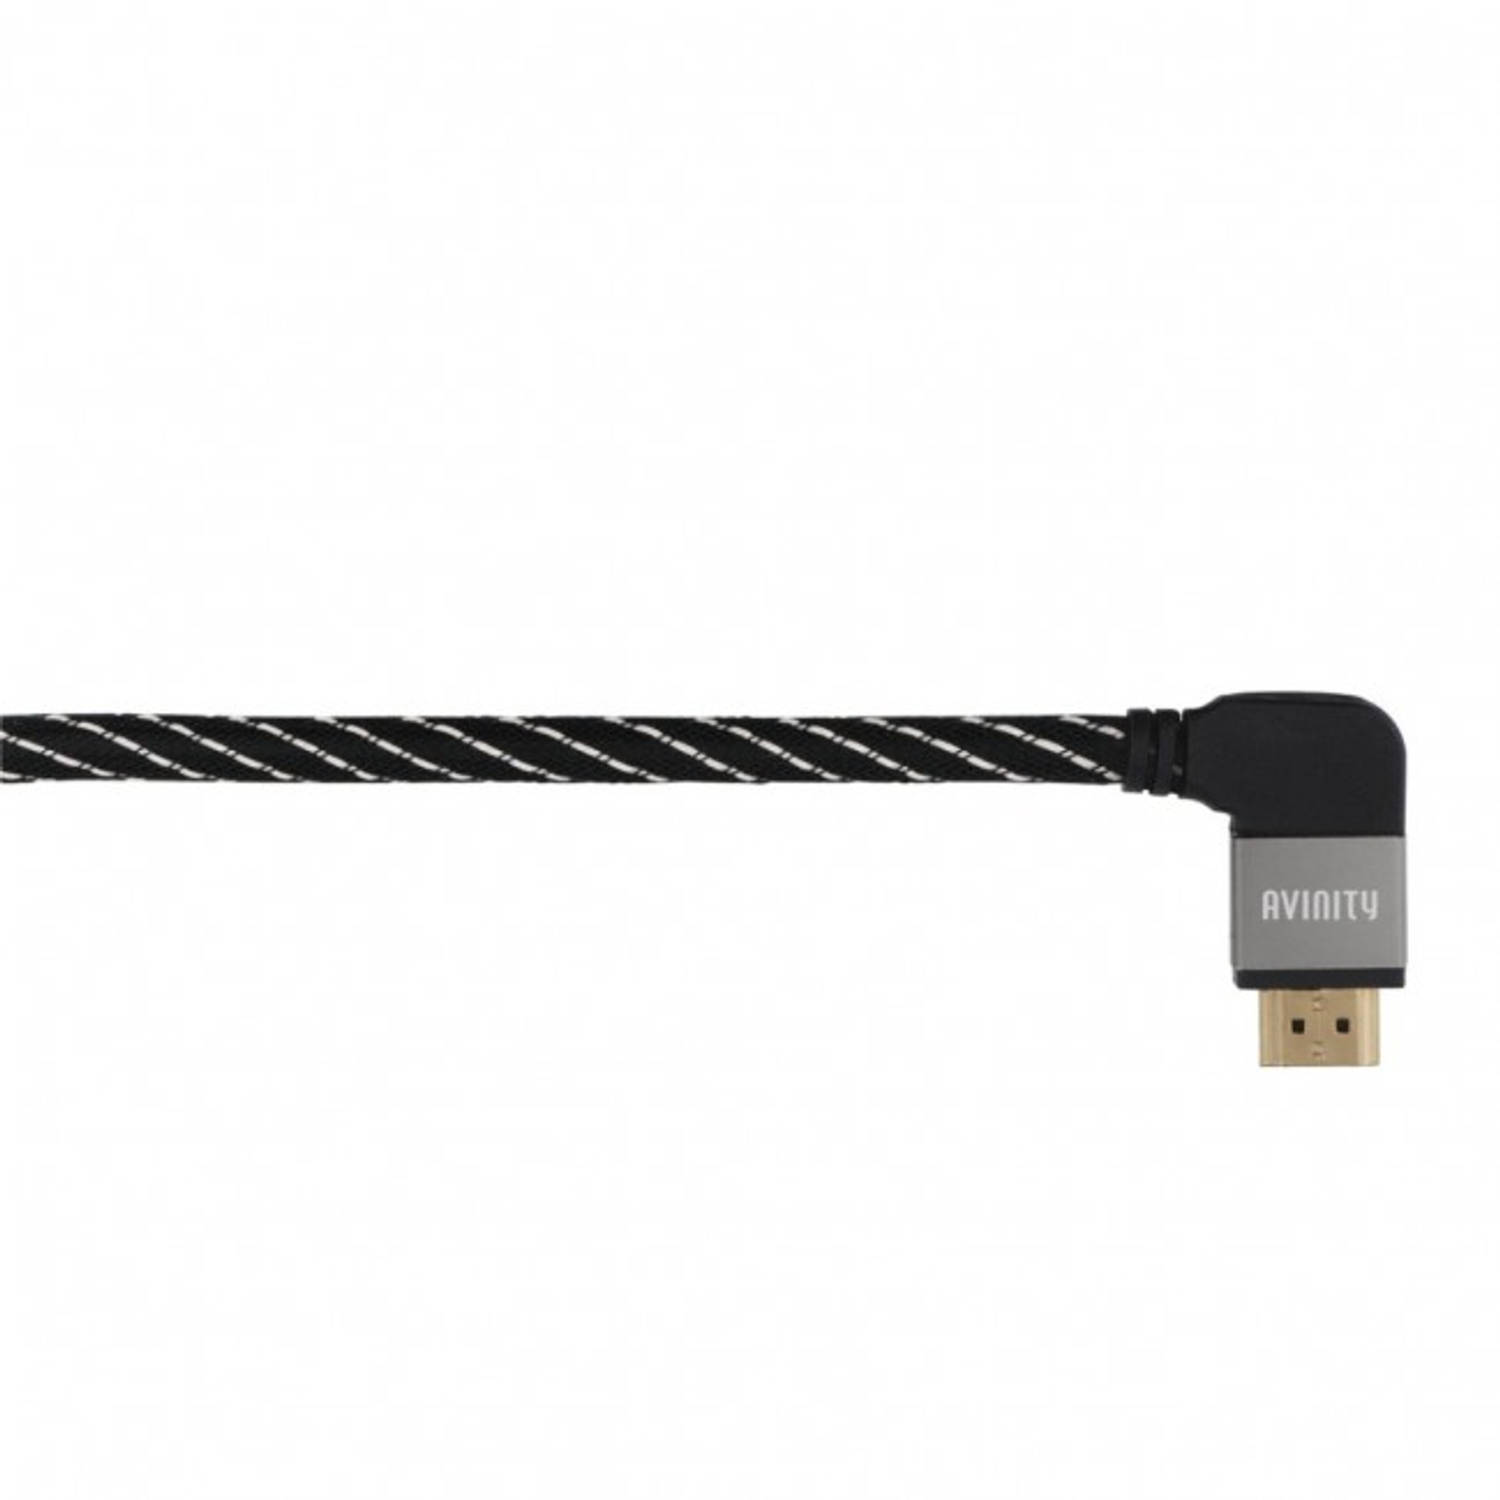 Avinity HDMI kabel met ethernet 90 ° connector 3.0m verguld